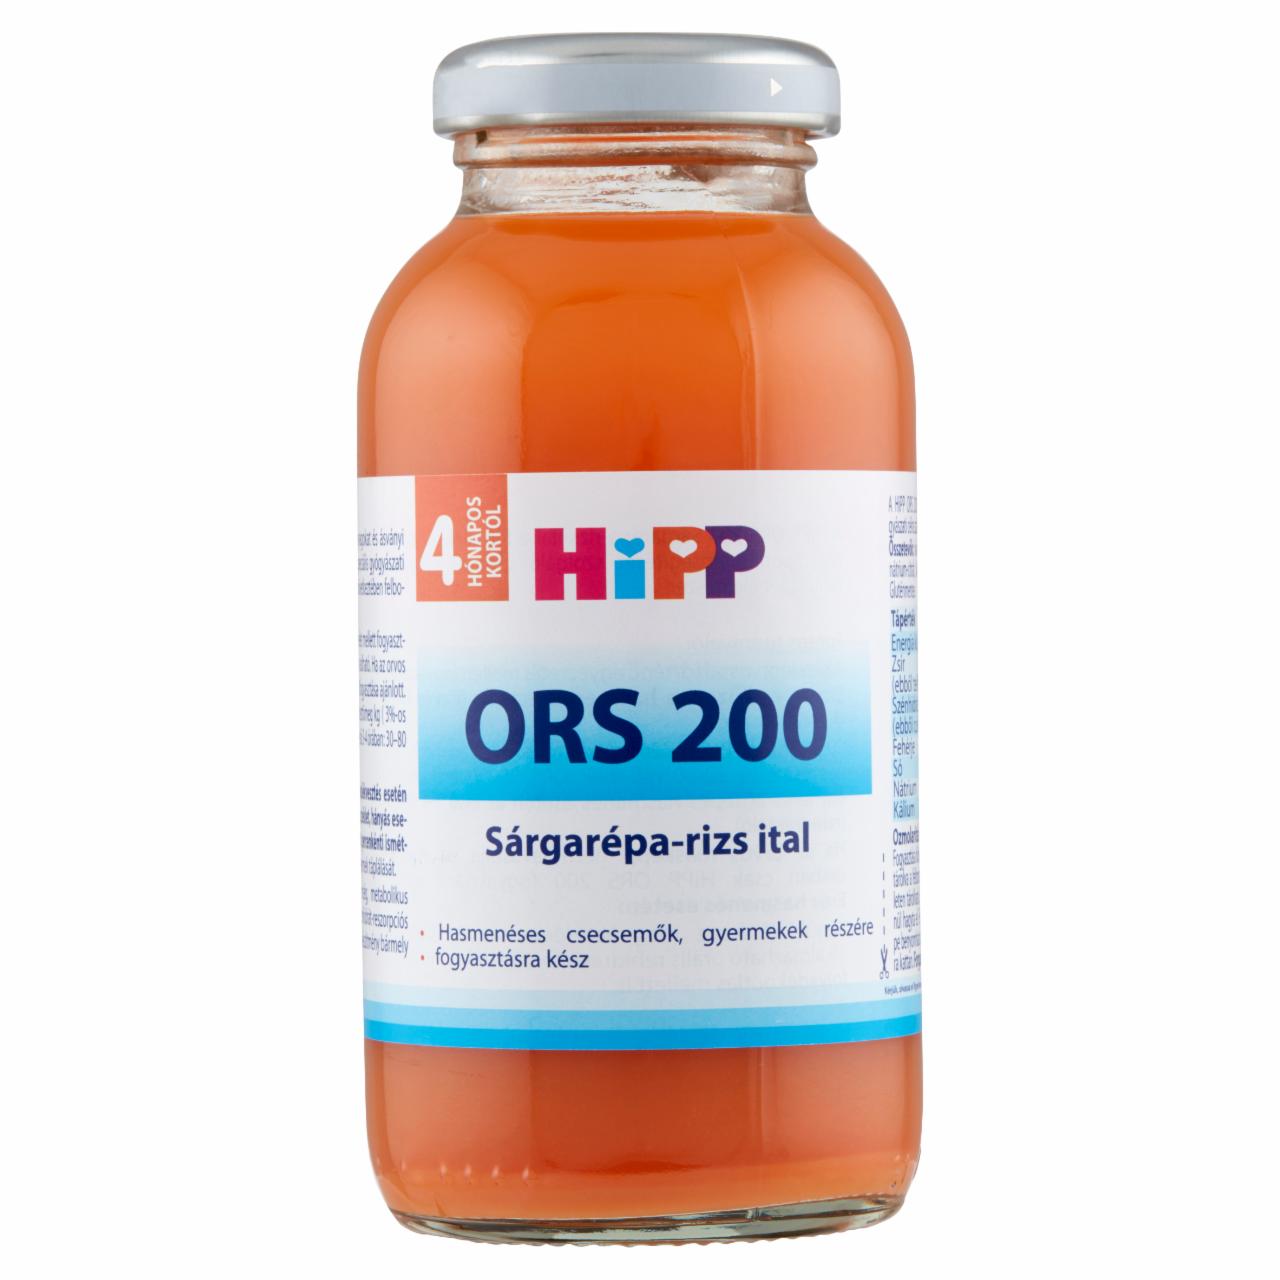 Képek - HiPP ORS 200 sárgarépa-rizs ital 4 hónapos kortól 0,2 l